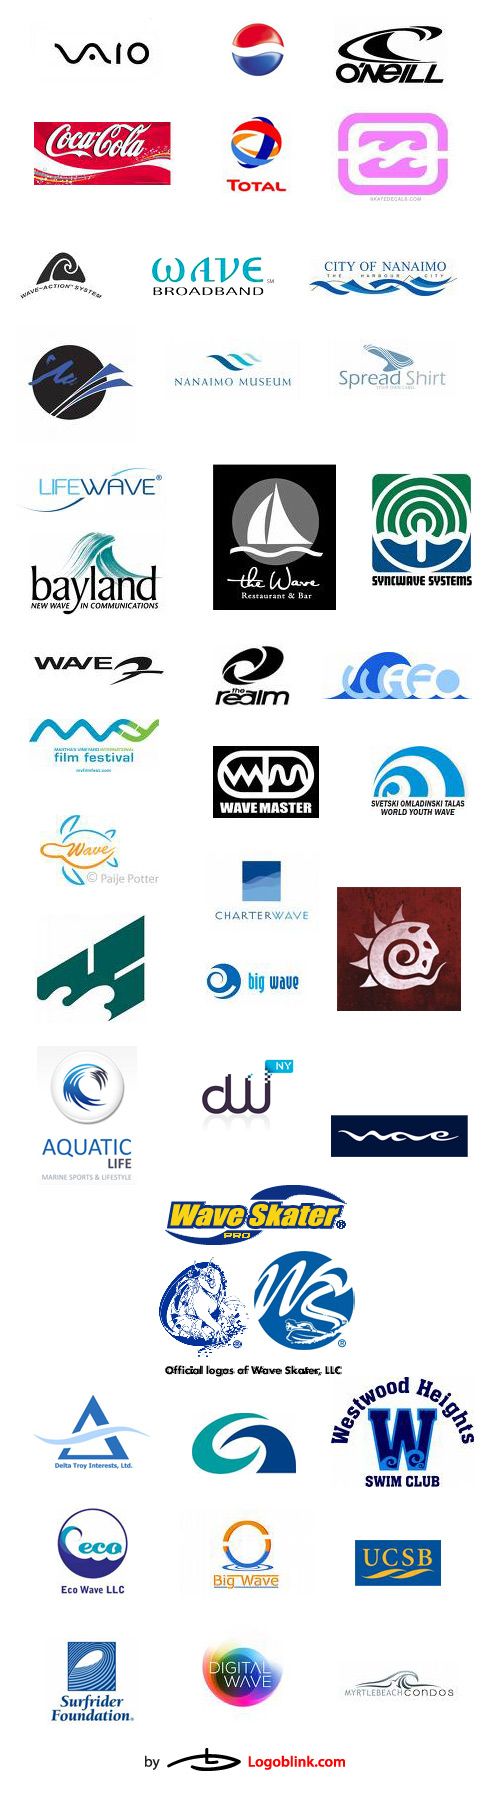 wave logo design brands